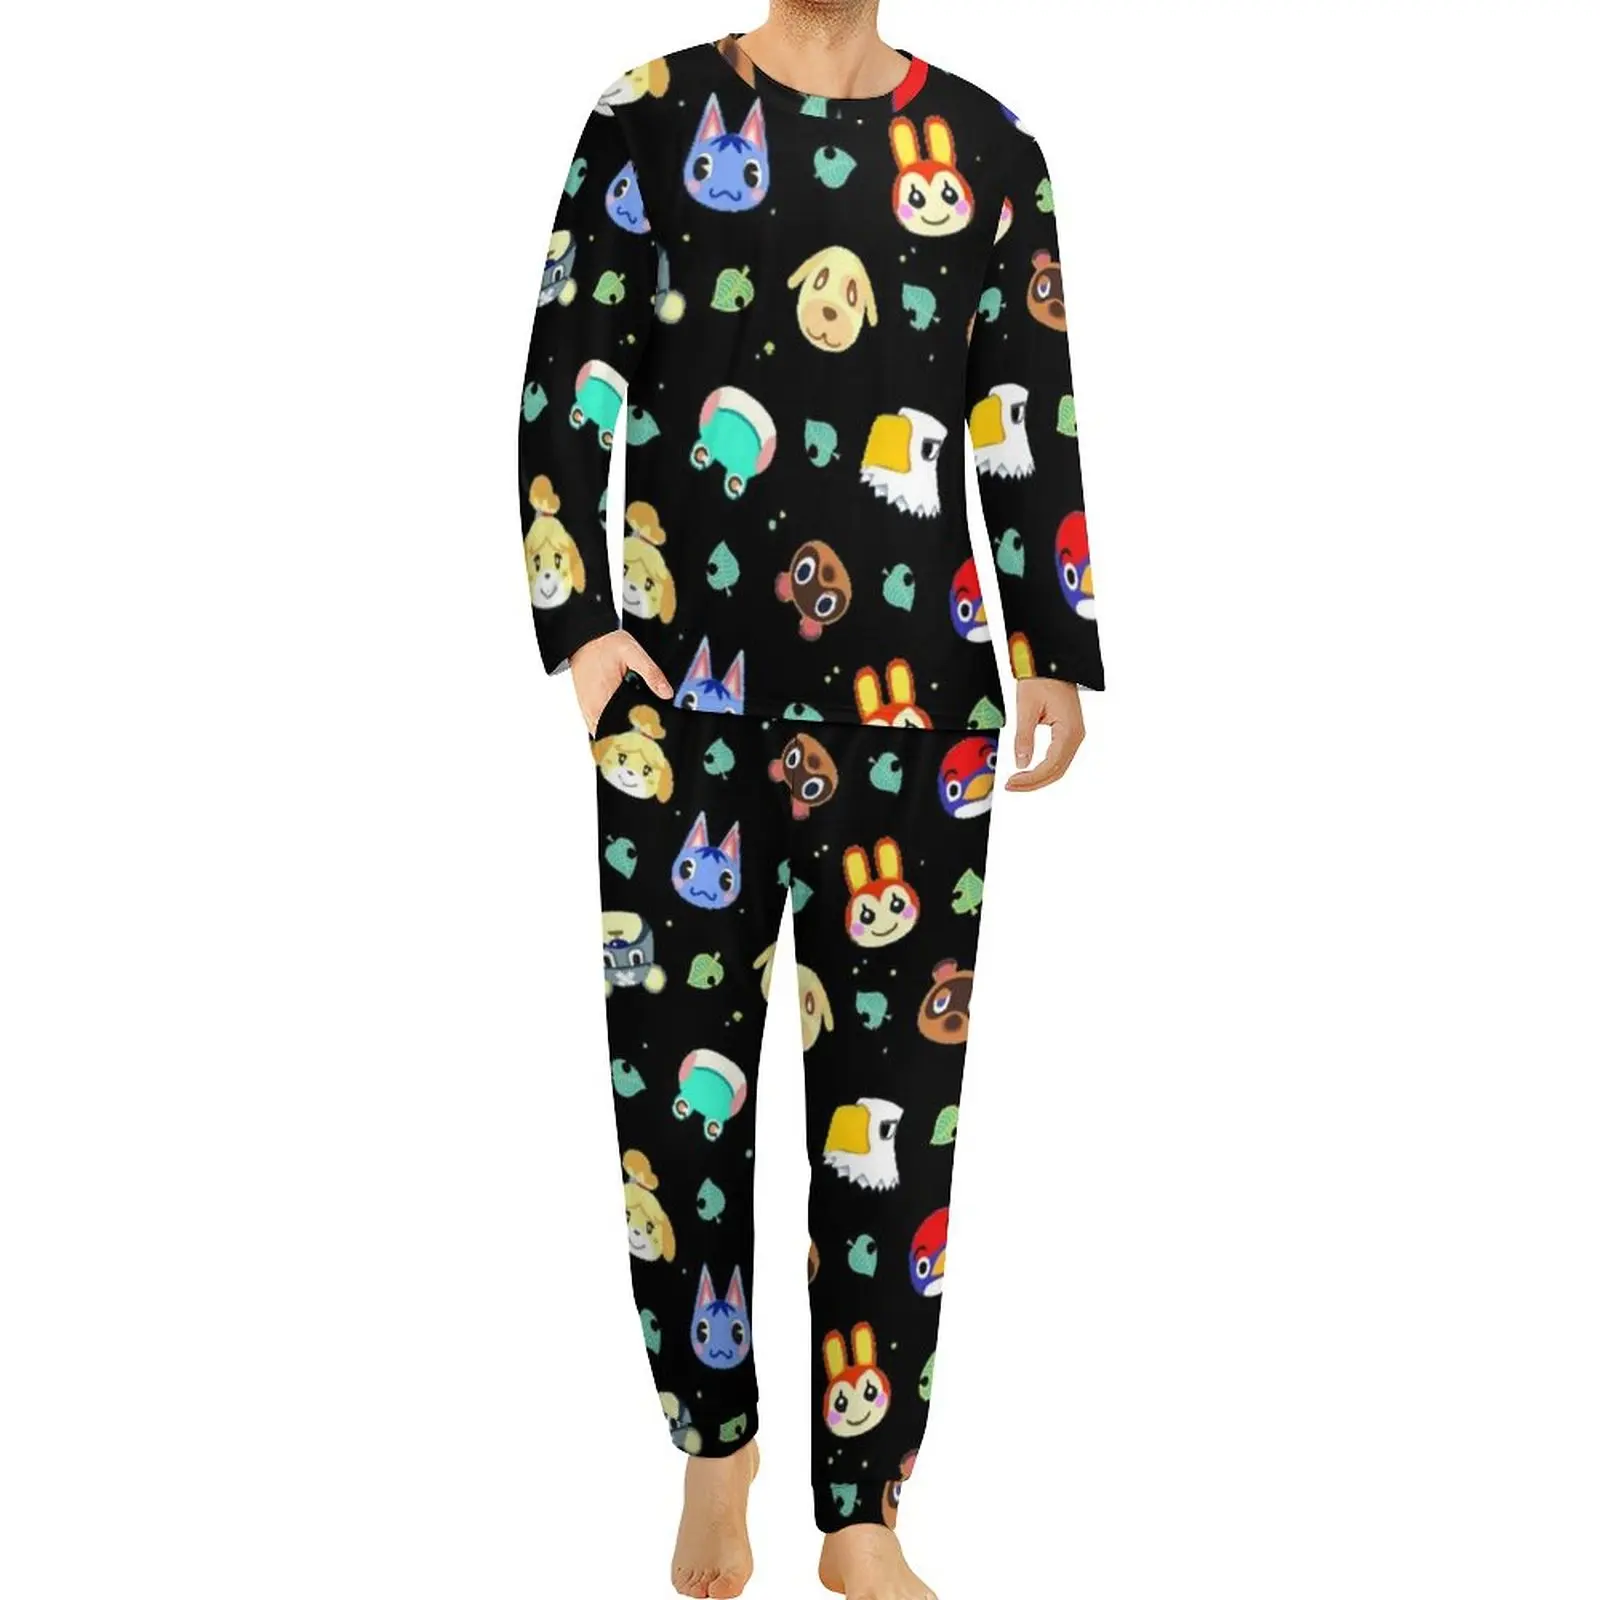 

Пижама с перекрестным узором в виде животных, Осенний крутой пижамный комплект из 2 предметов для игры, мужской повседневный домашний костюм с графическим рисунком и длинным рукавом, большой размер 4XL 5XL